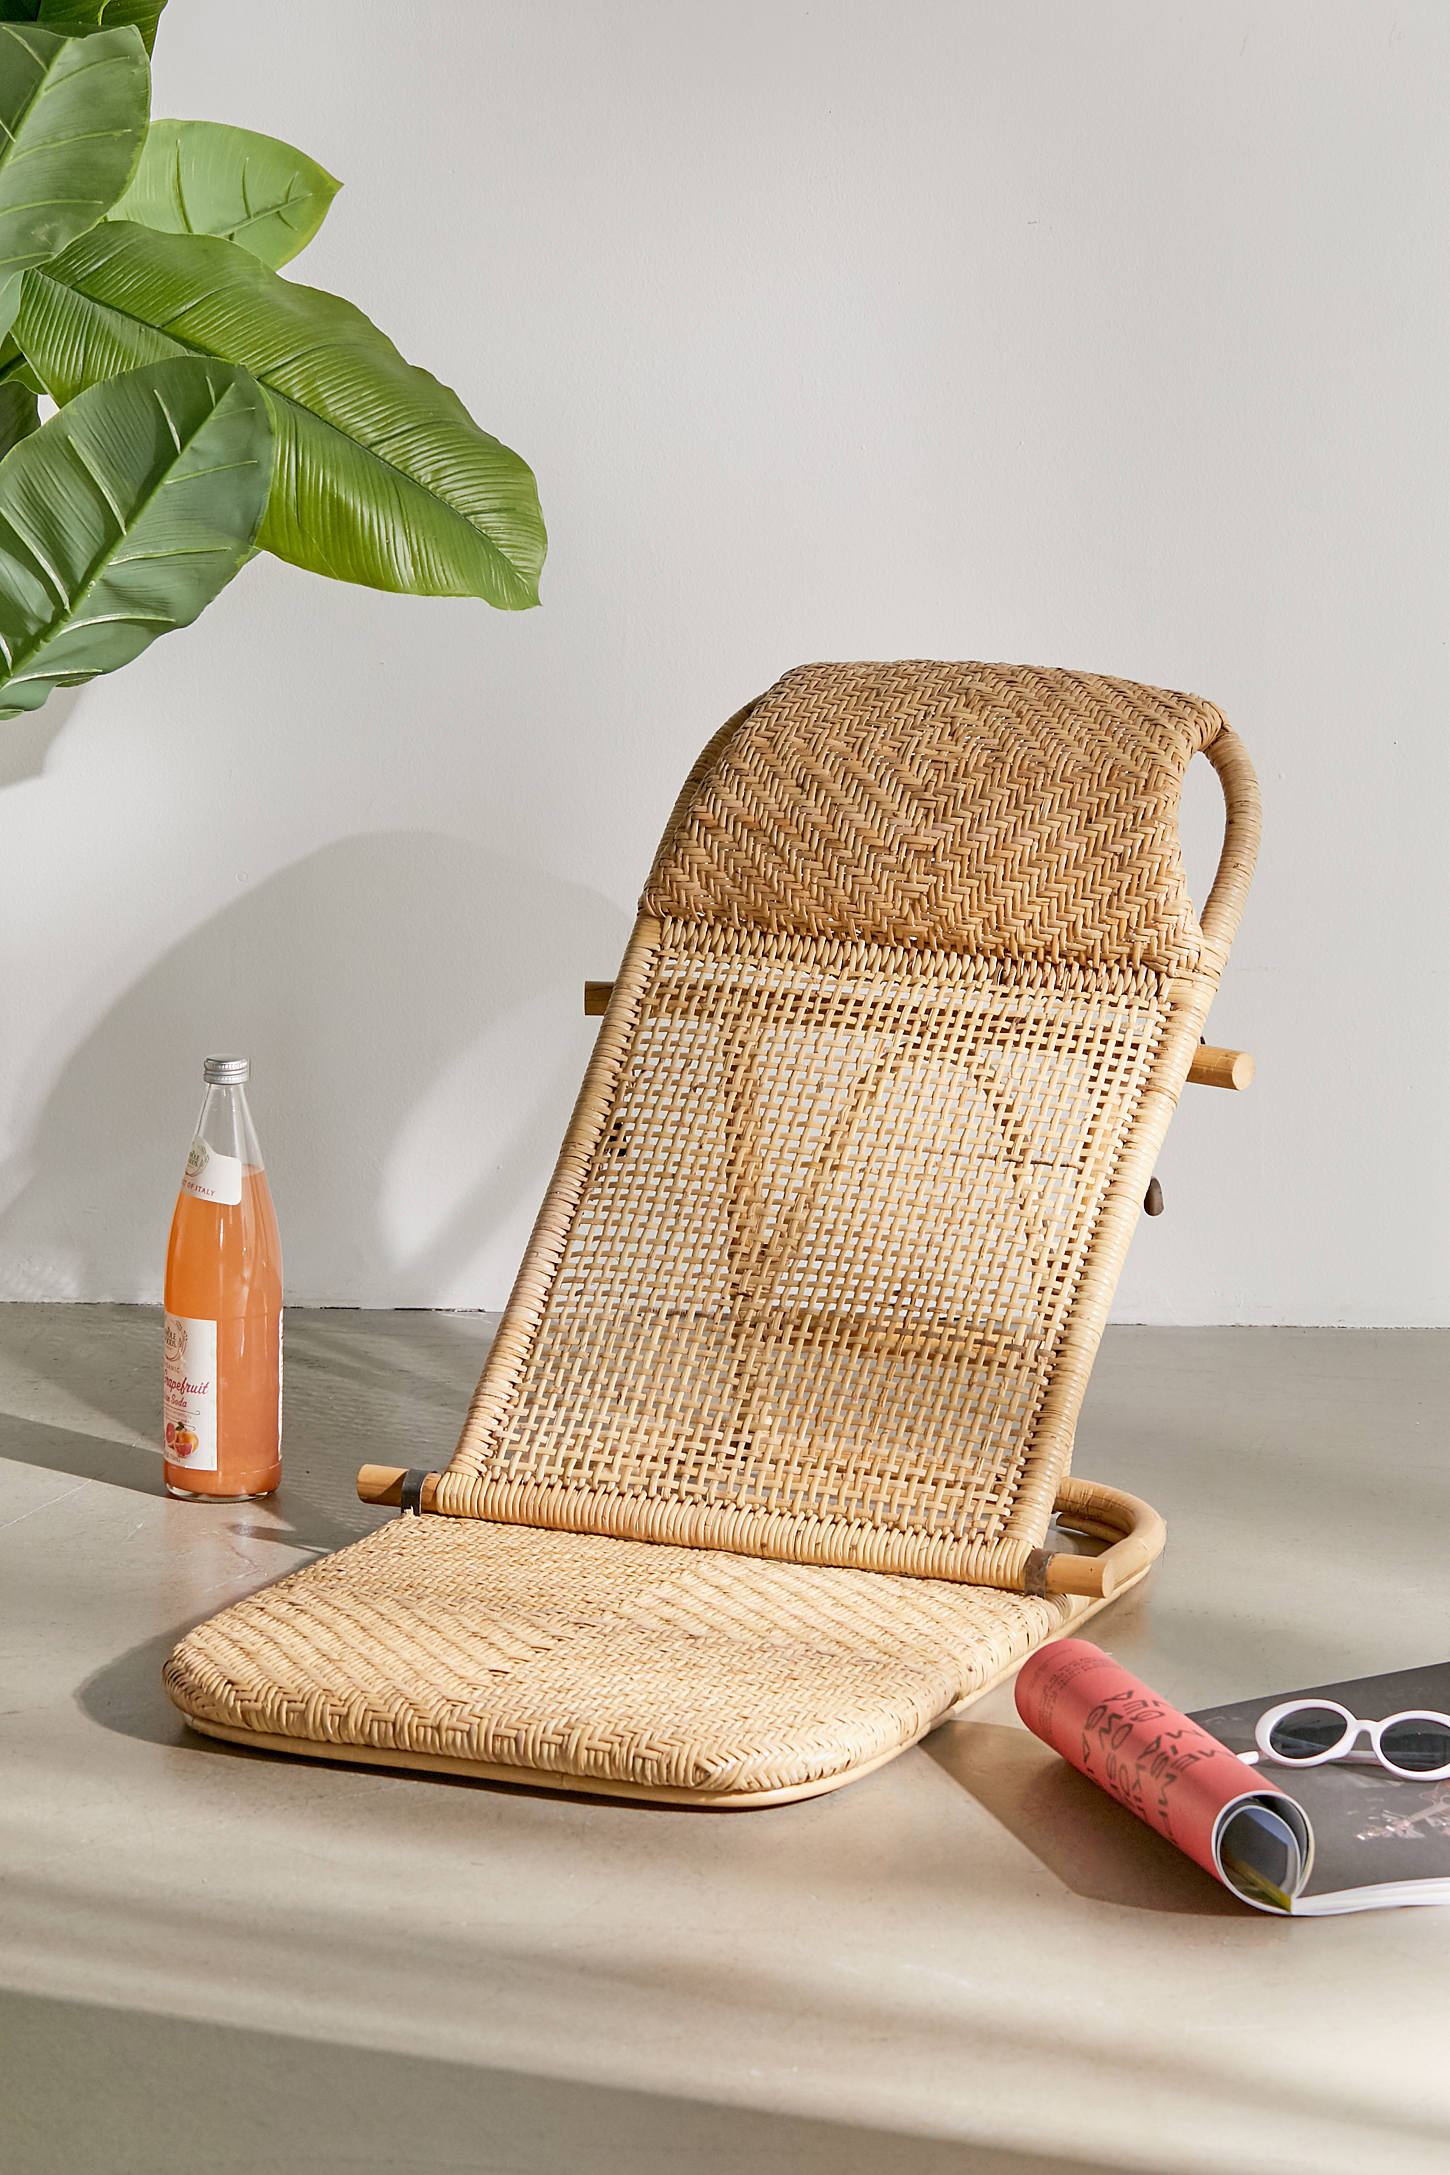 padded beach chair